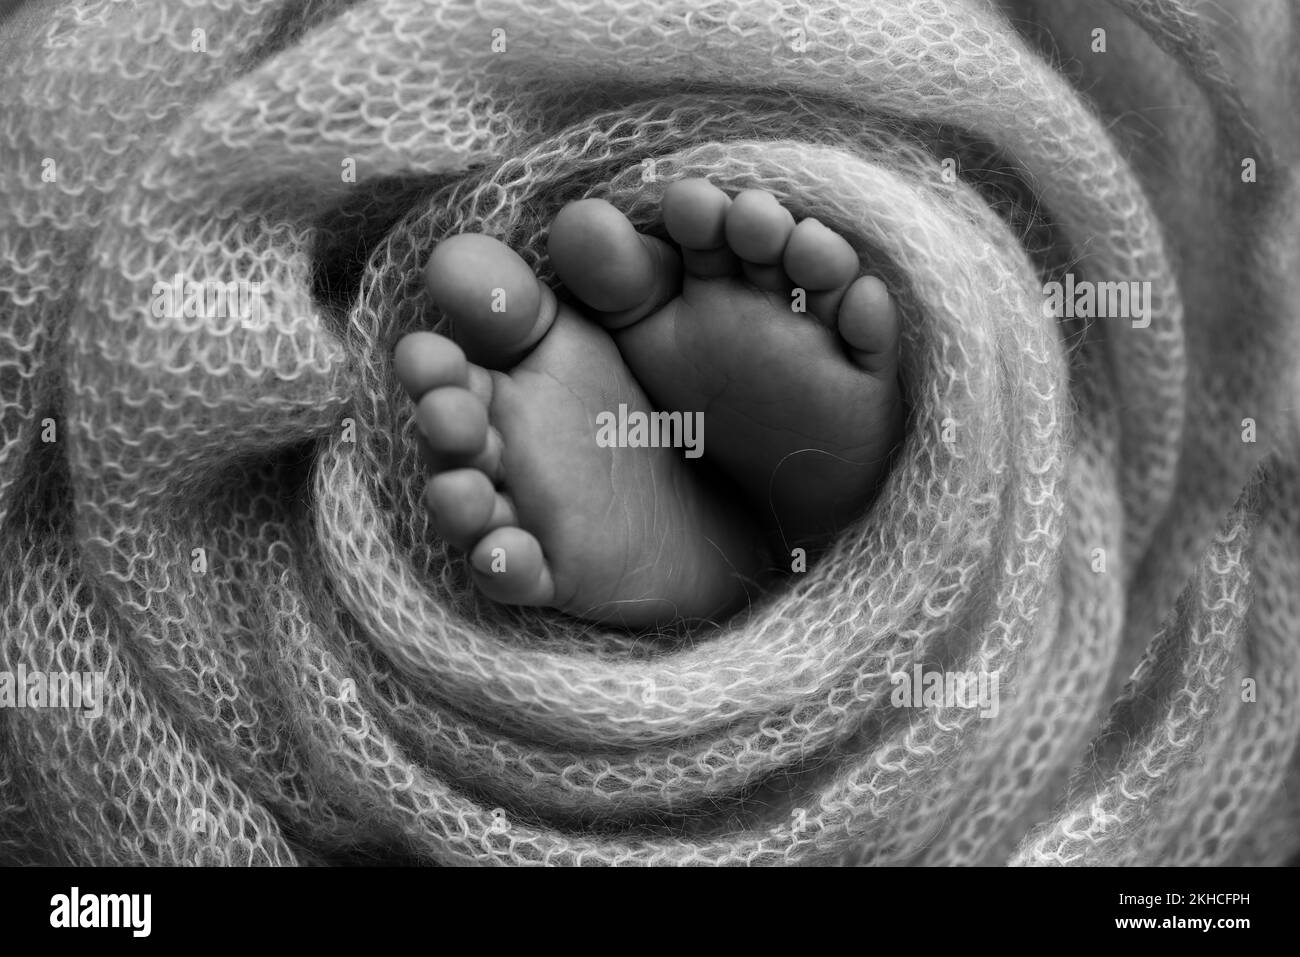 Weiche Füsse eines Neugeborenen in einer Wolldecke. Schwarzweiß-Makrofotografie. Stockfoto